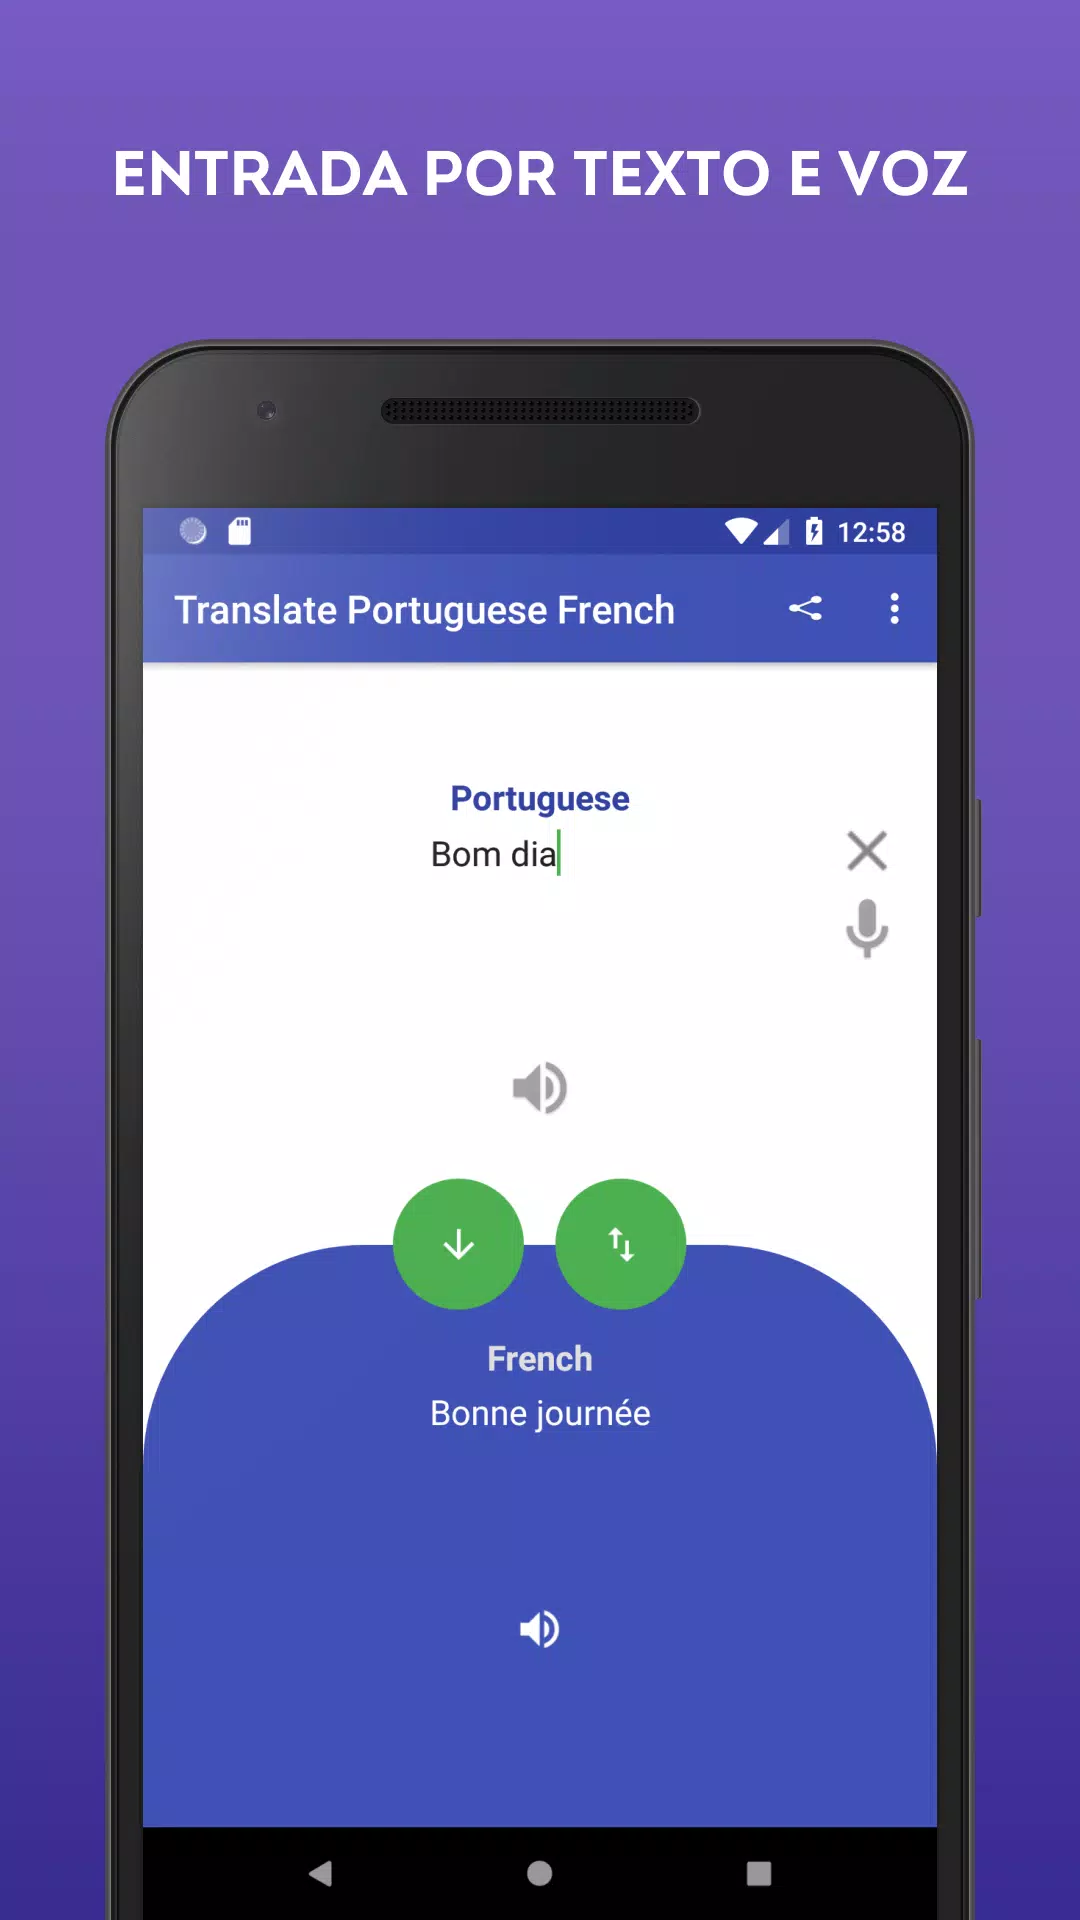 Download do APK de Tradutor Português Francês para Android